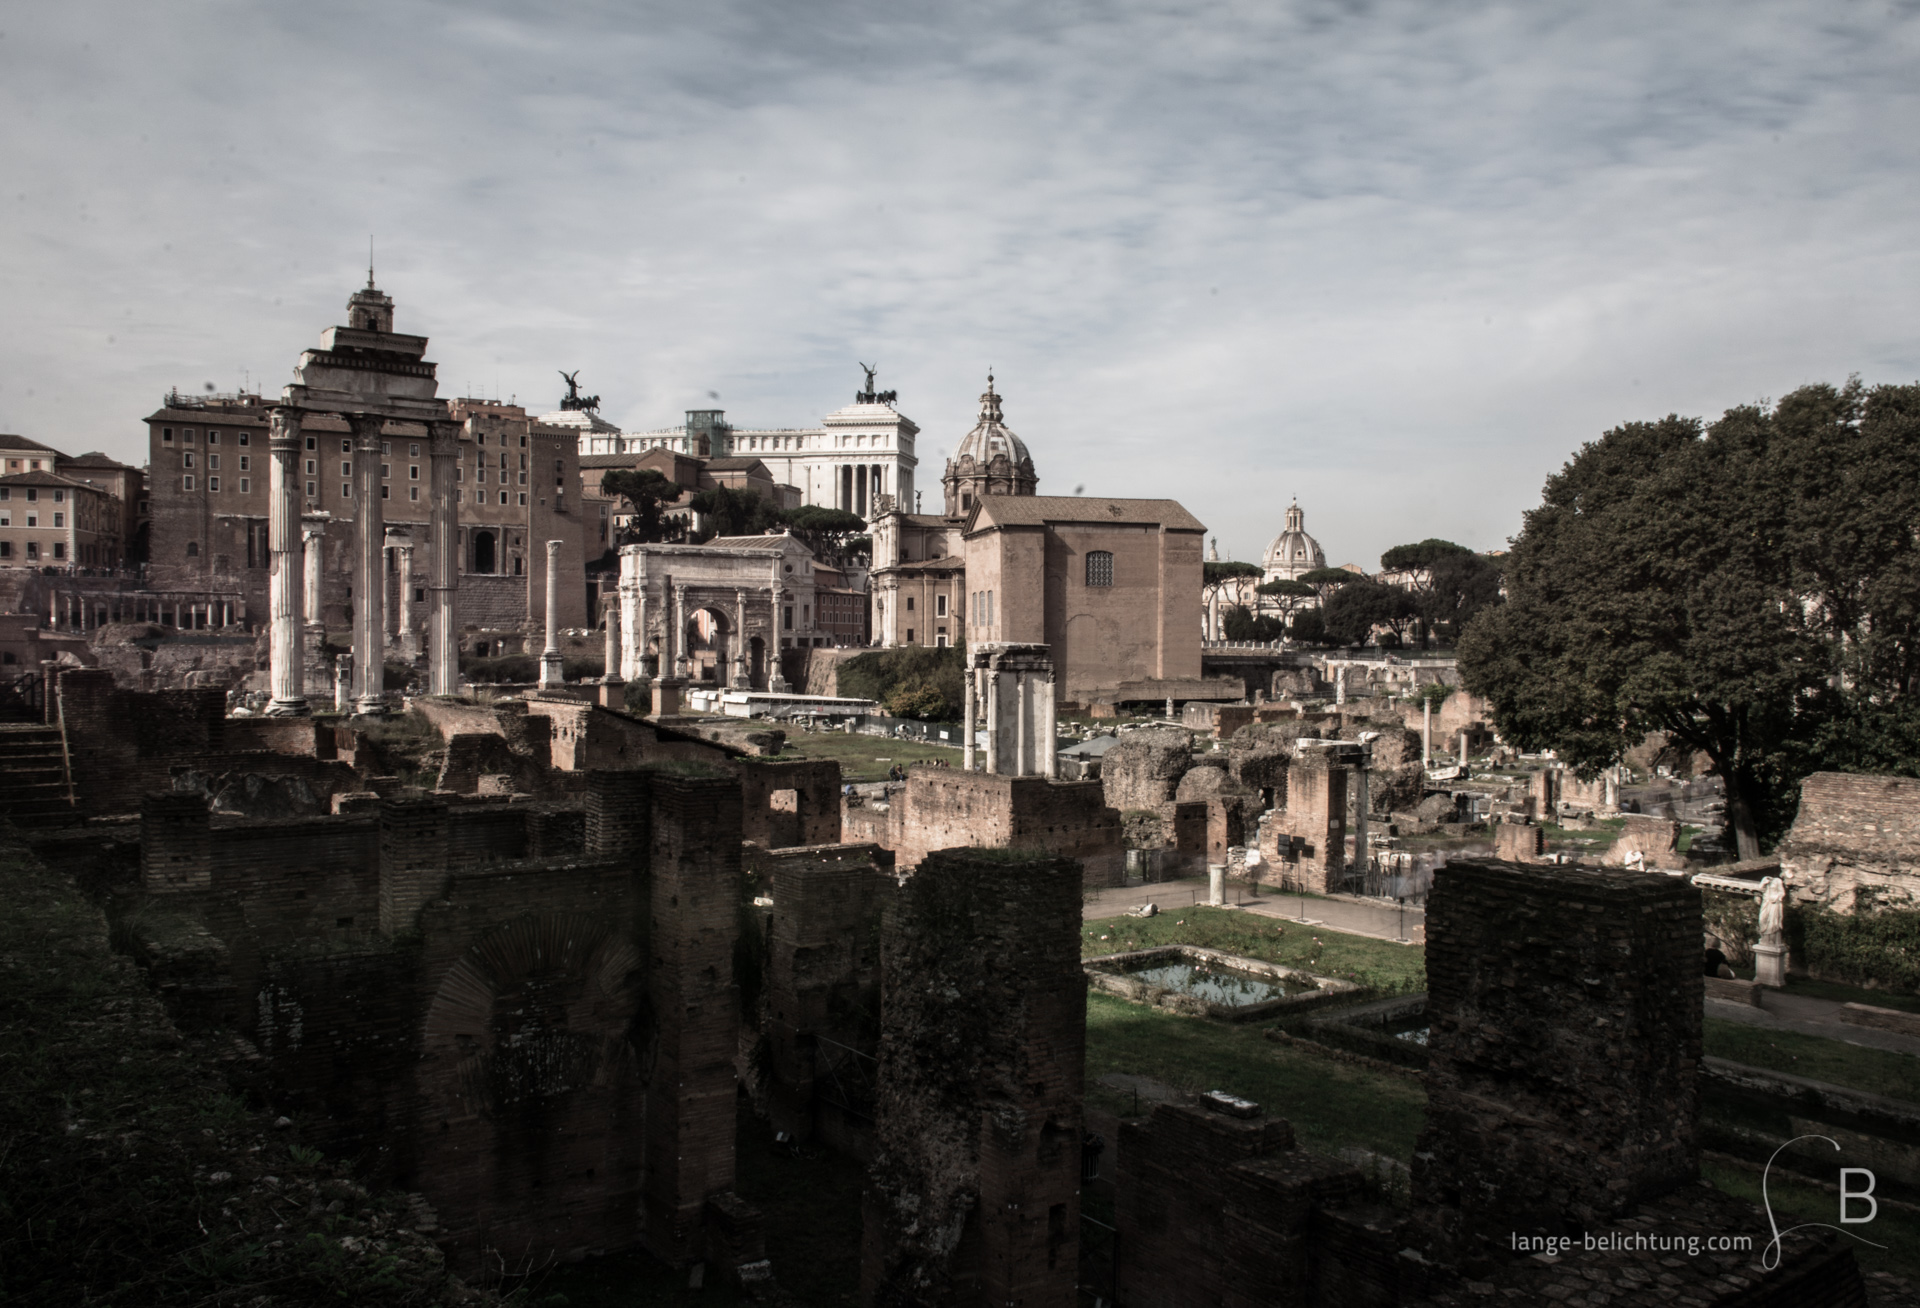 Ein Blick auf das Forum Romanum. Im Vordergrund stehen Mauerreste. Weiter hinten sieht man Überreste von Tempeln und den Triumpfbogen. Zwischen den Gebäuden erkennt man auch das Denkmal Vittorio Emmanuel.